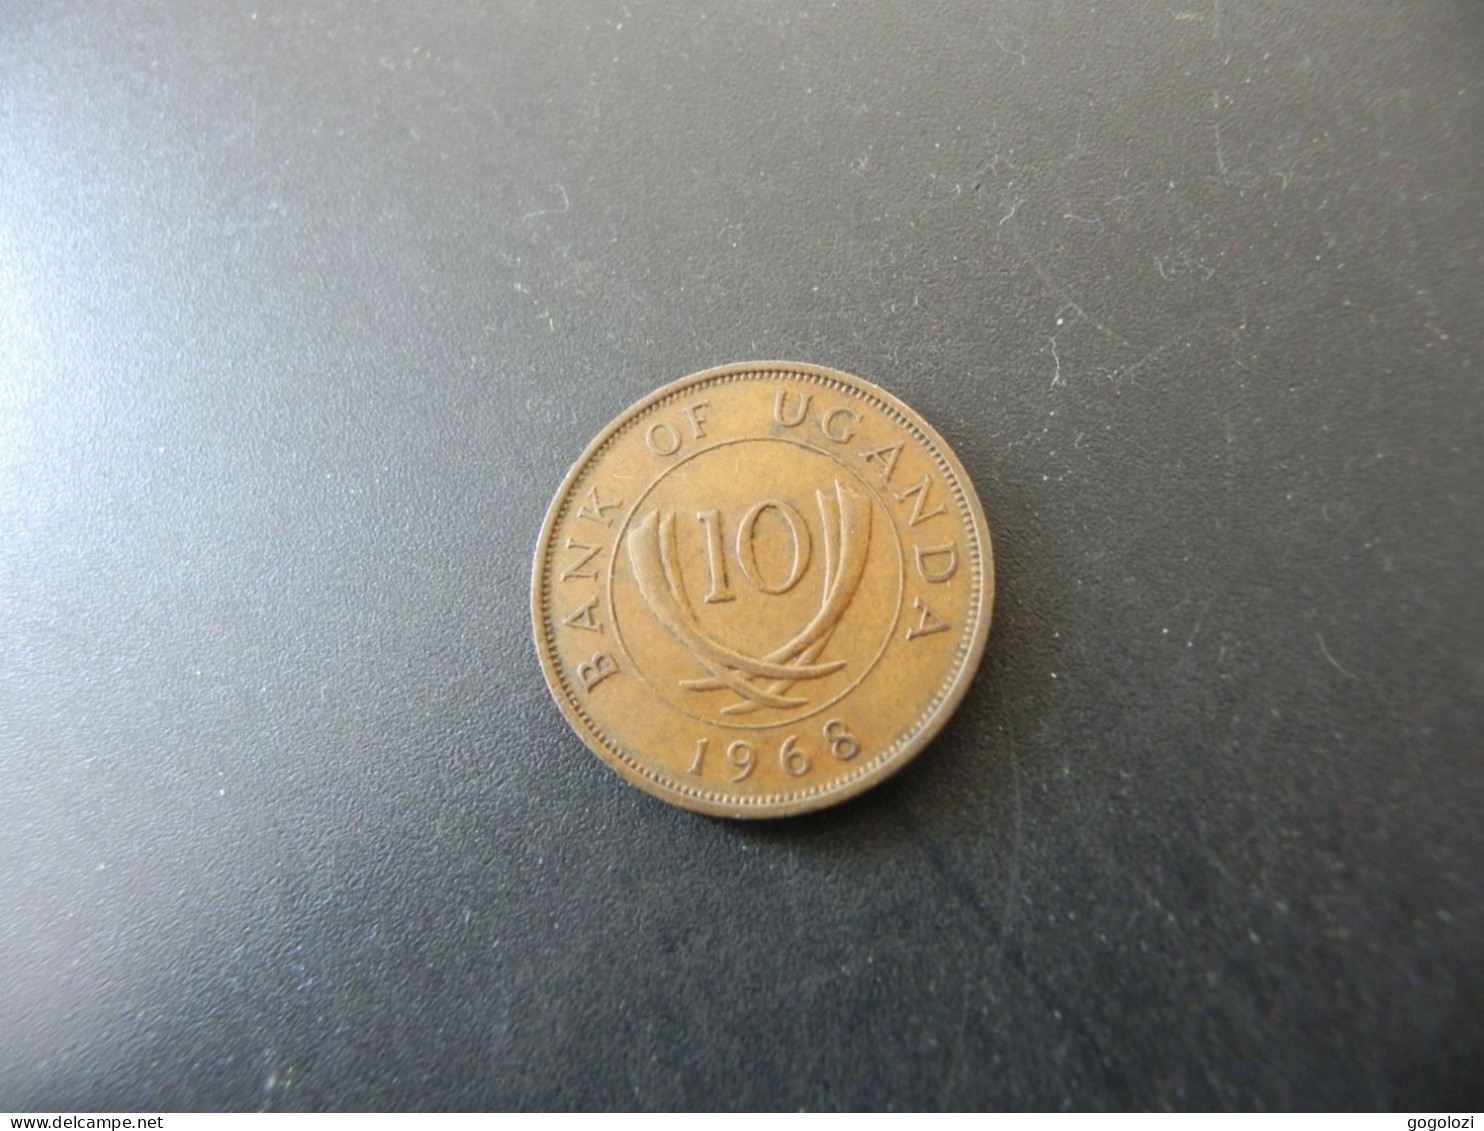 Uganda 10 Cents 1968 - Ouganda